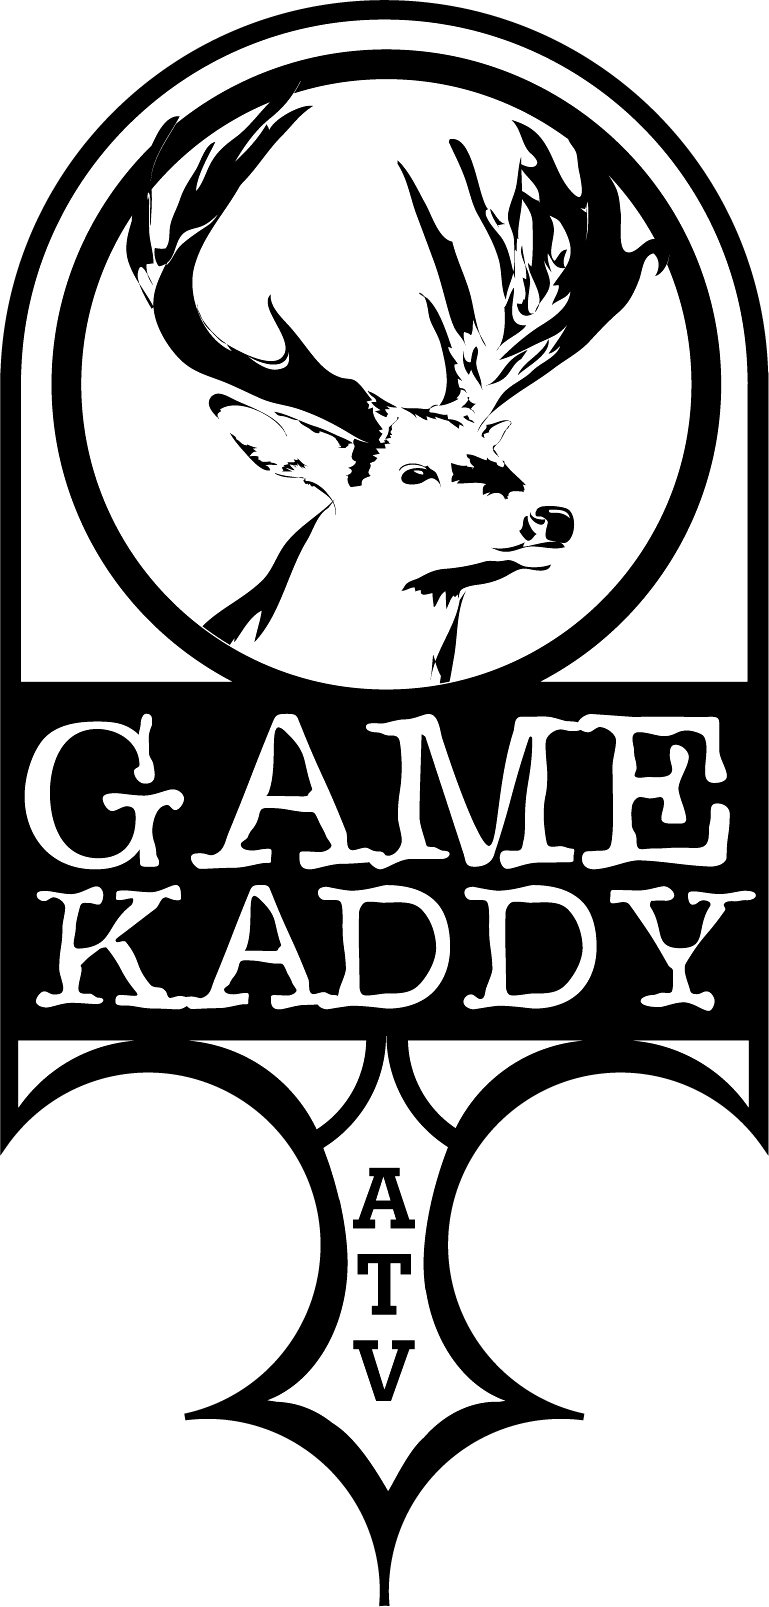  GAME KADDY ATV